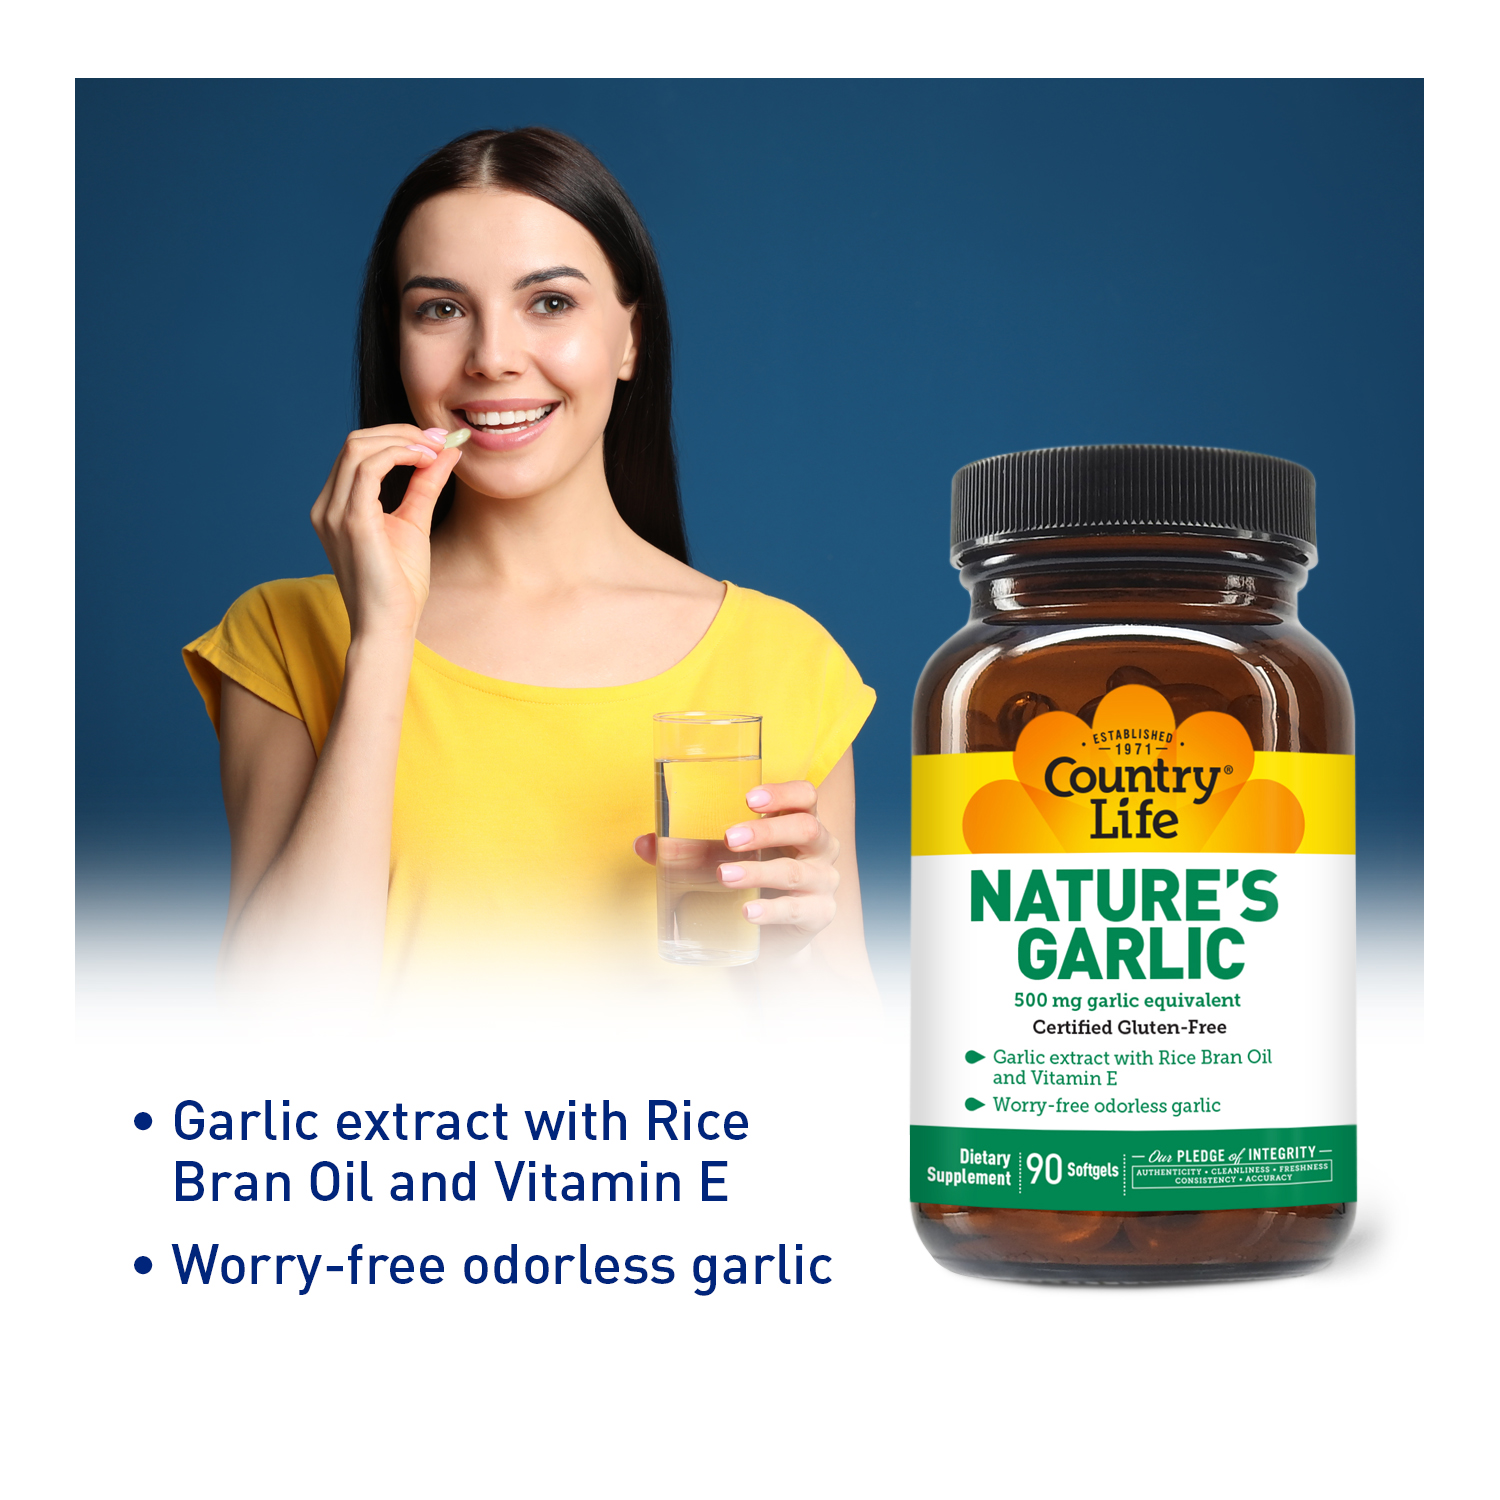 Nature’s Garlic